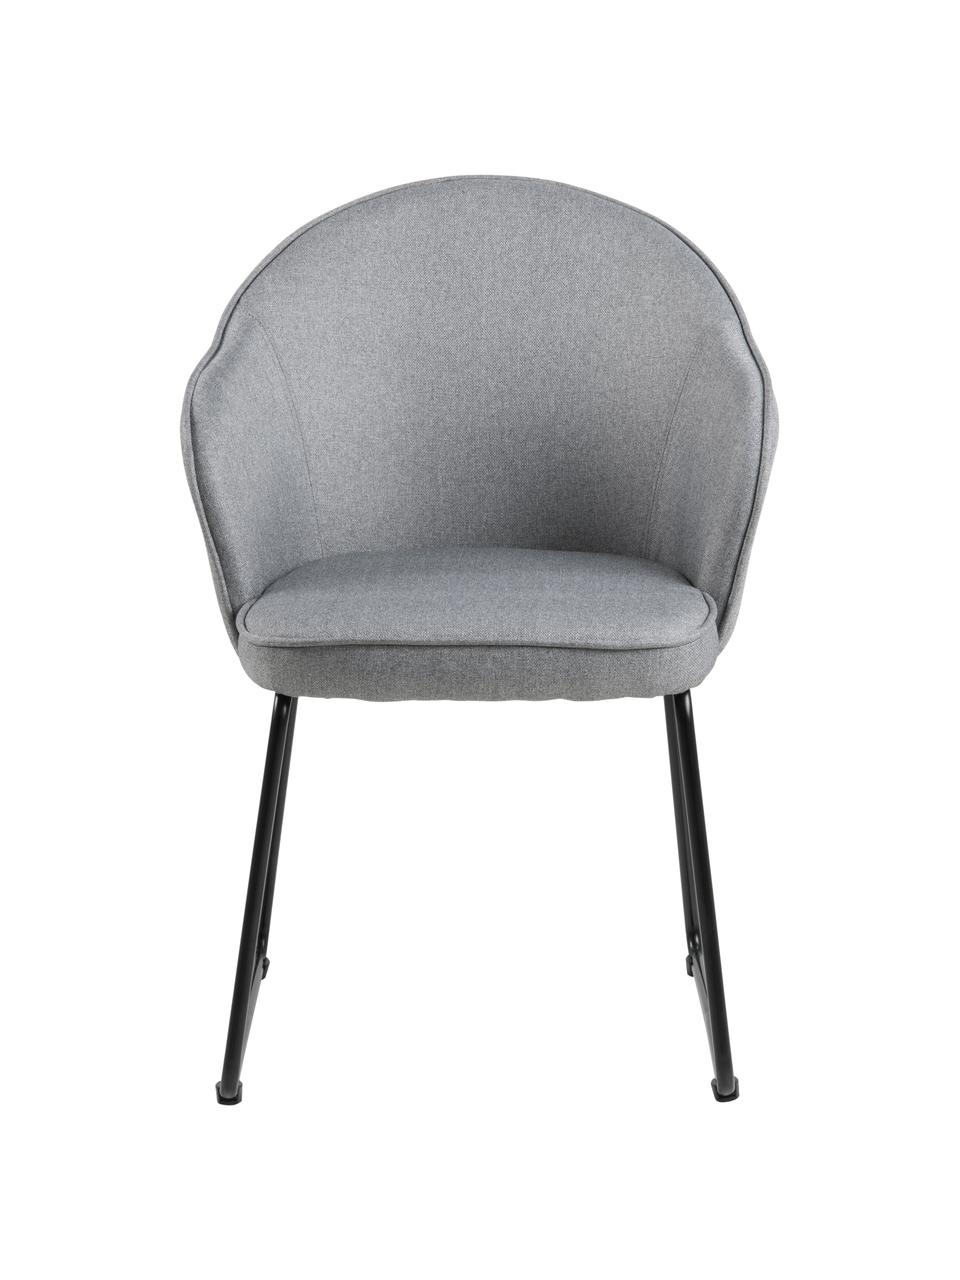 Chaise design Mitzie, Tissu gris clair, pieds noir